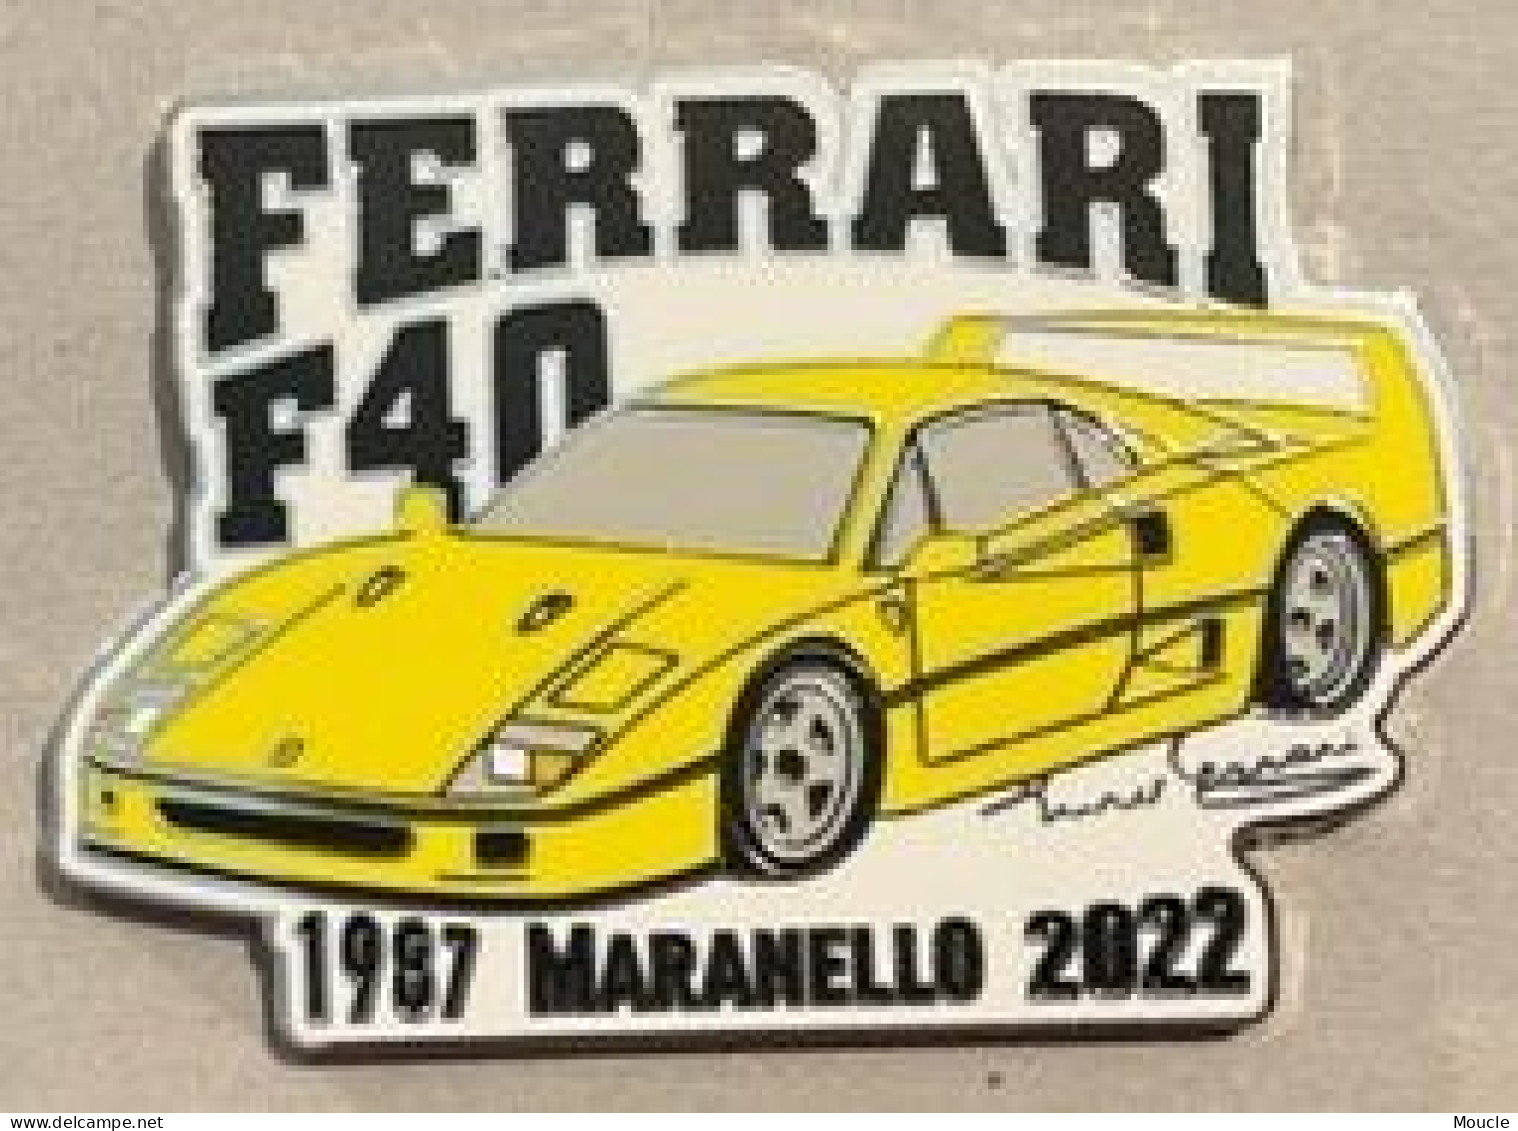 FERRARI F40 JAUNE - 1987 MARANELLO 2022 - EGF - ITALIE - ITALIA - AUTOMOBILE - CAR - VOITURE - AUTO - 19/25 - (32) - Ferrari